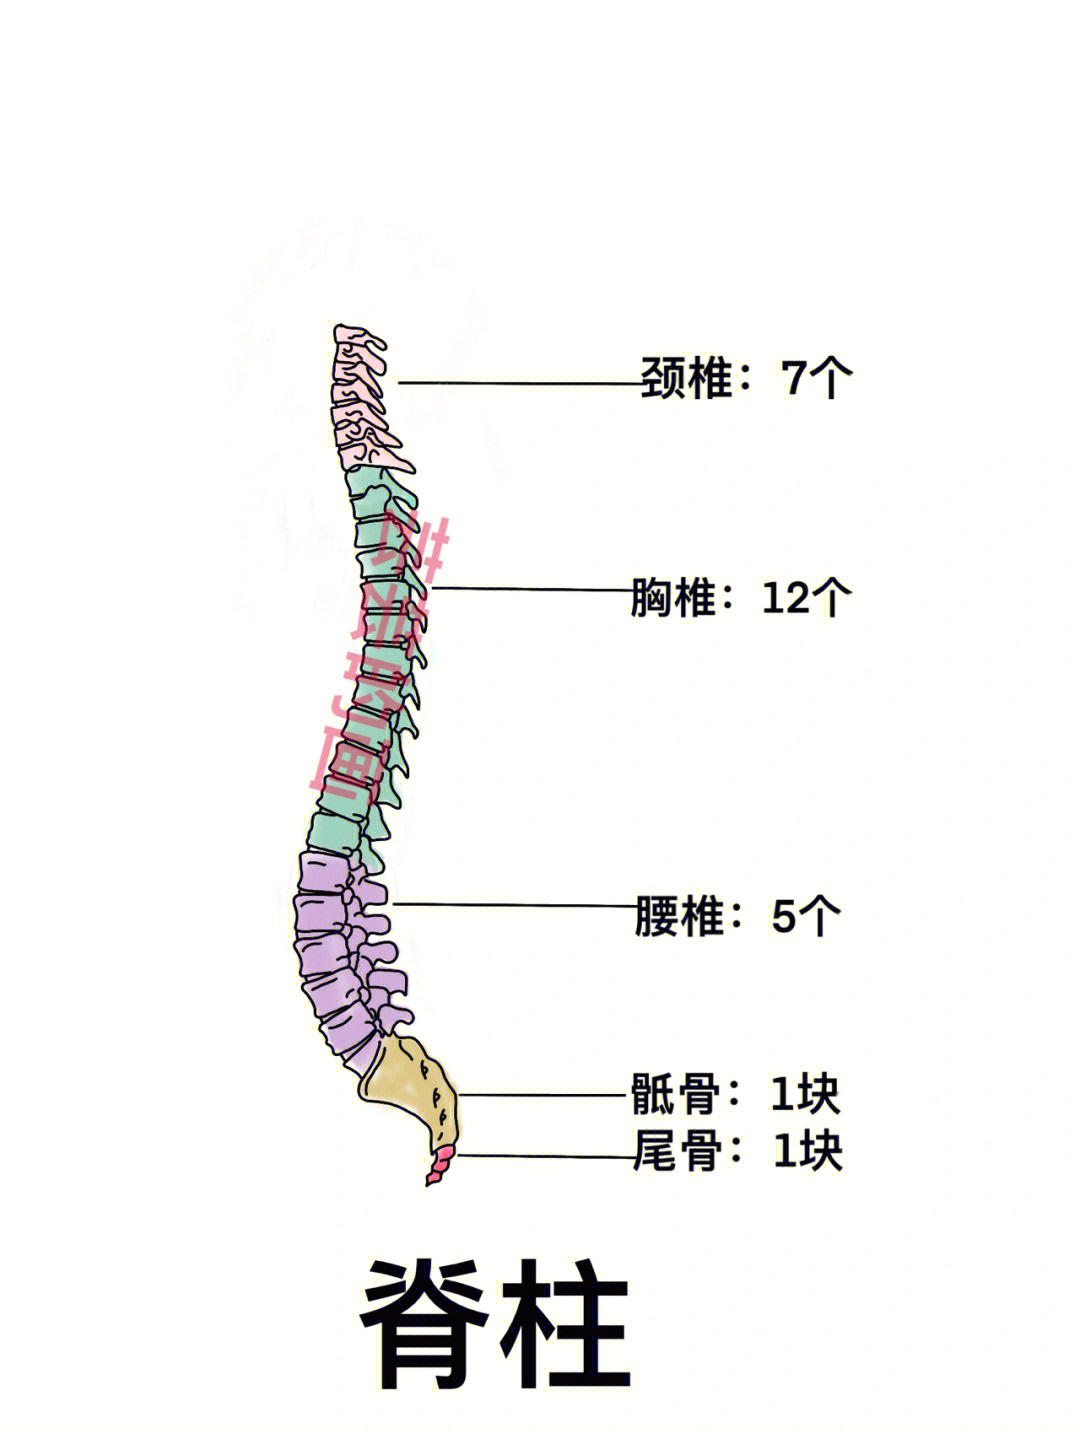 呈环状无椎体,棘突和关节突2枢椎(第2颈椎):有齿突3隆椎(第7颈椎)